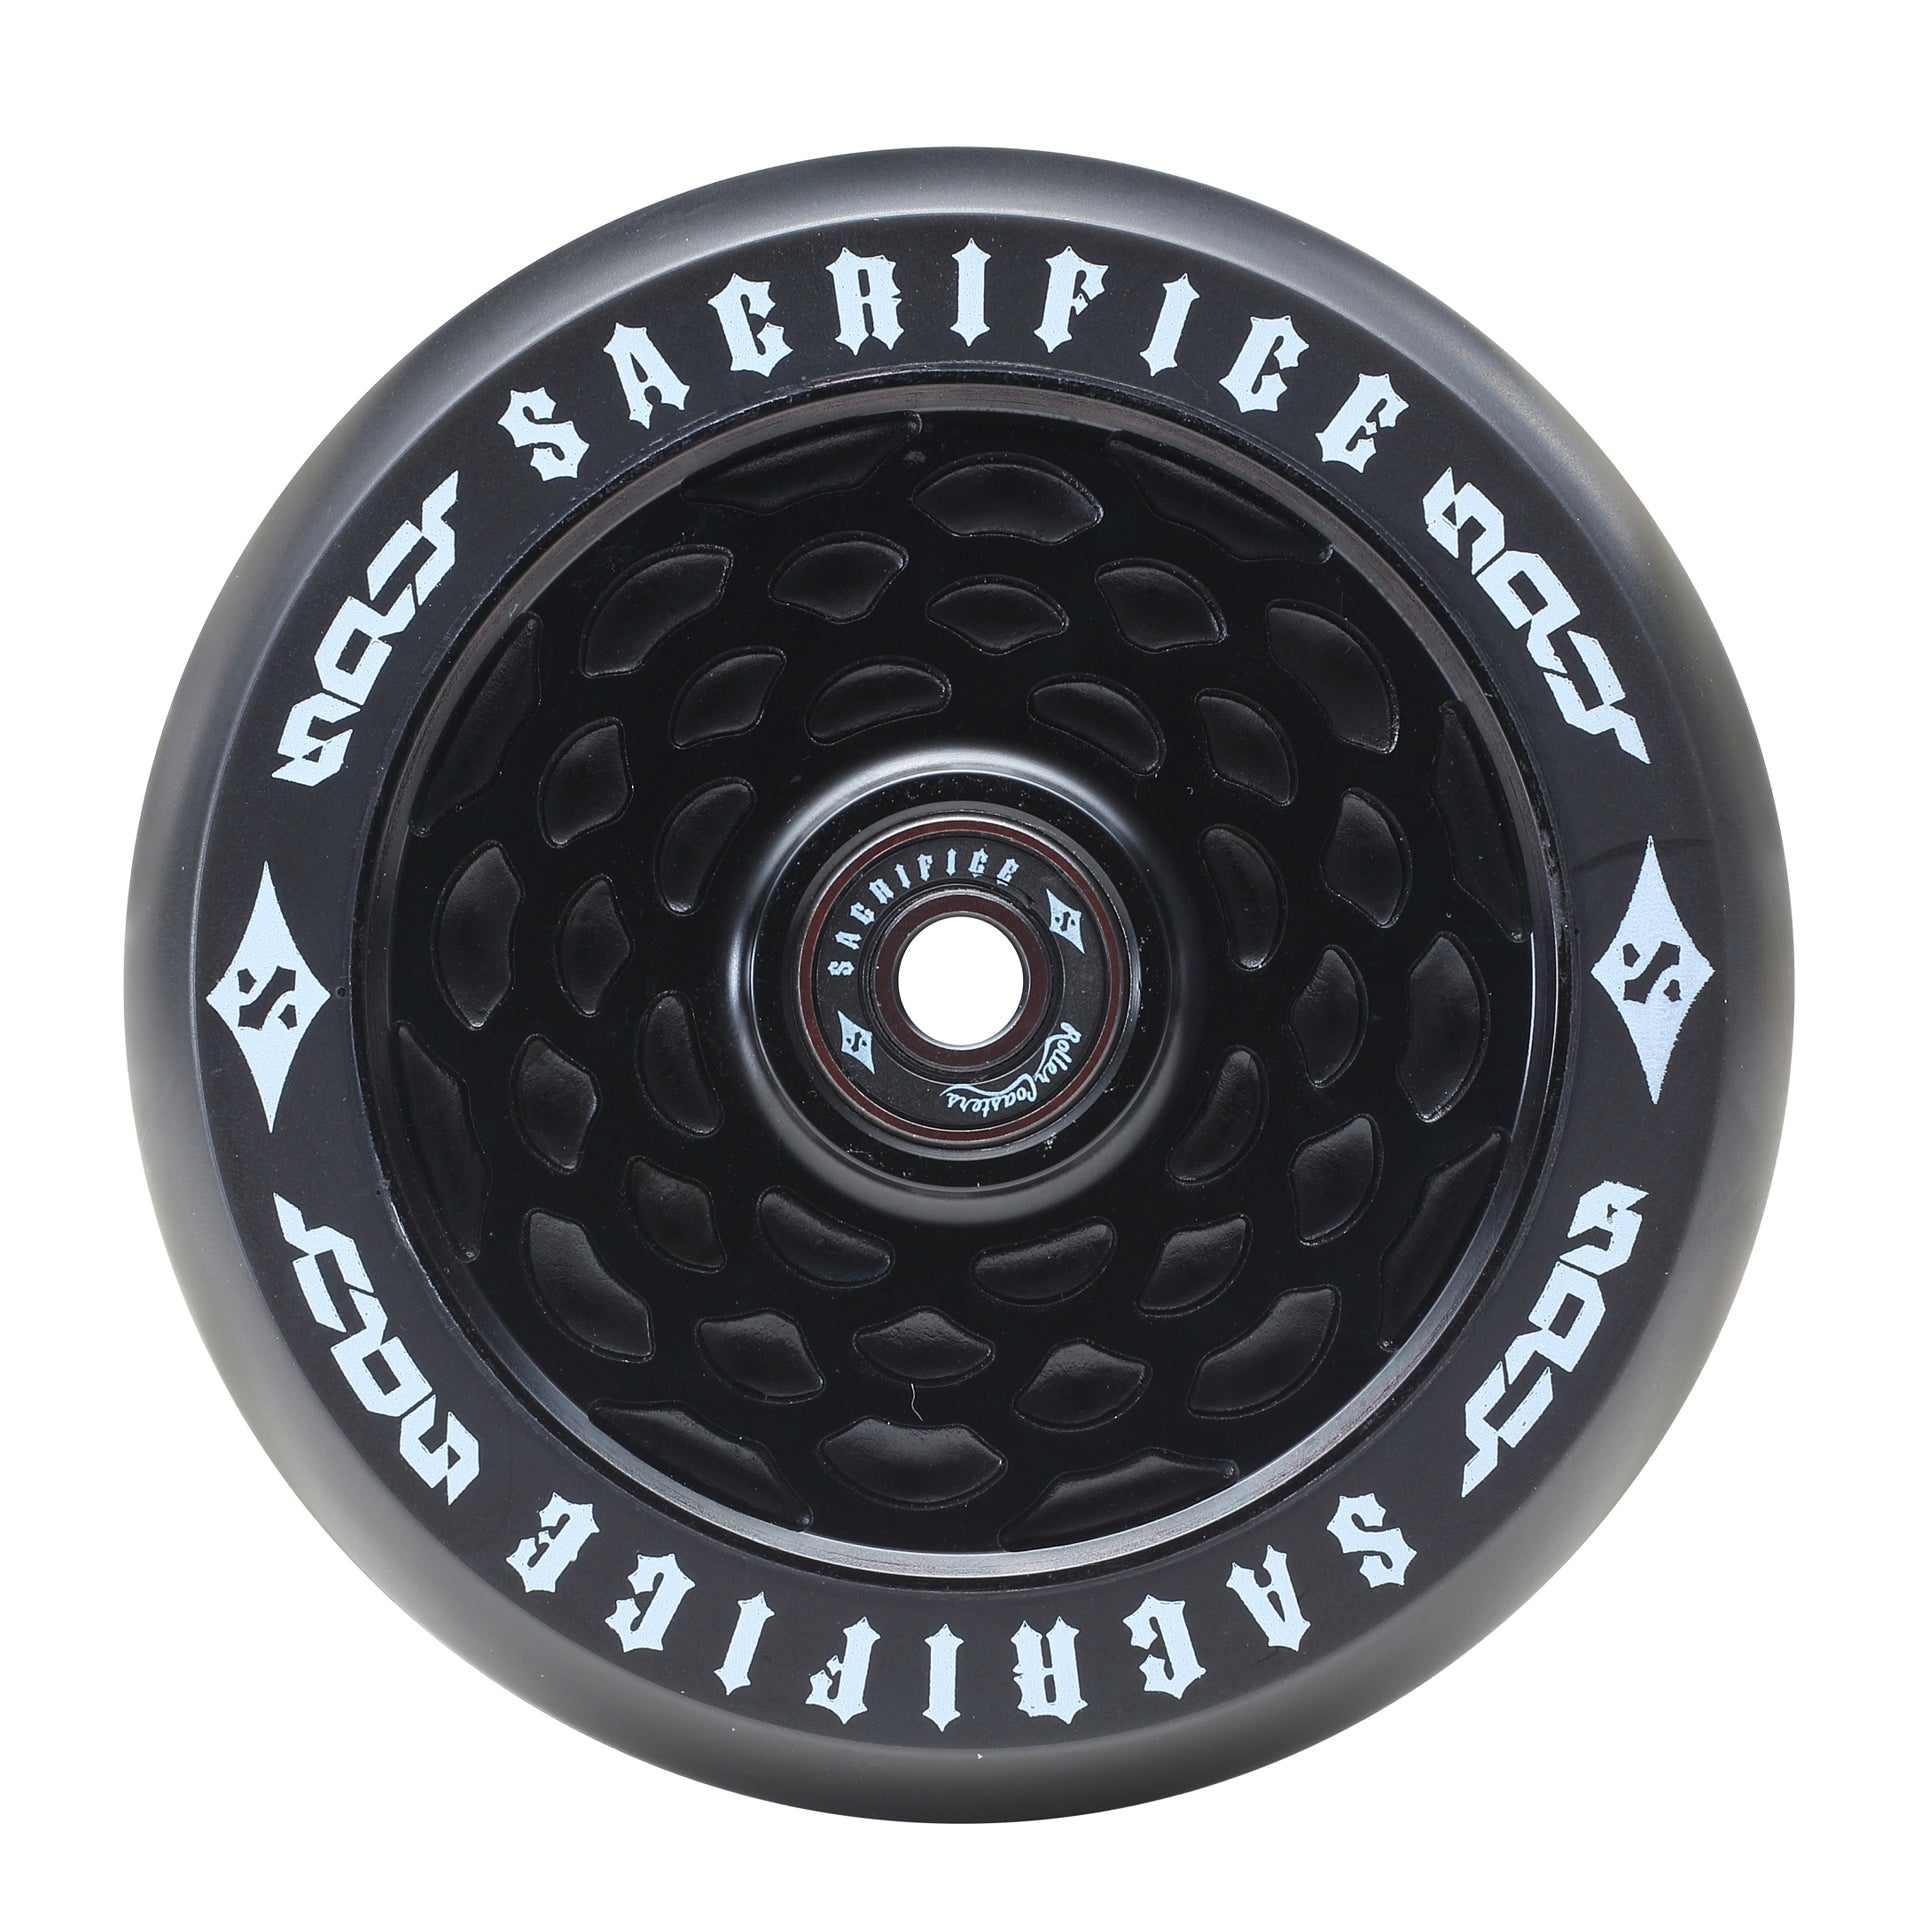 Sacrifice Spy Peephole Wheels 110mm - Black/ Black (x 2 / Sold as a pair) - Prime Delux Store